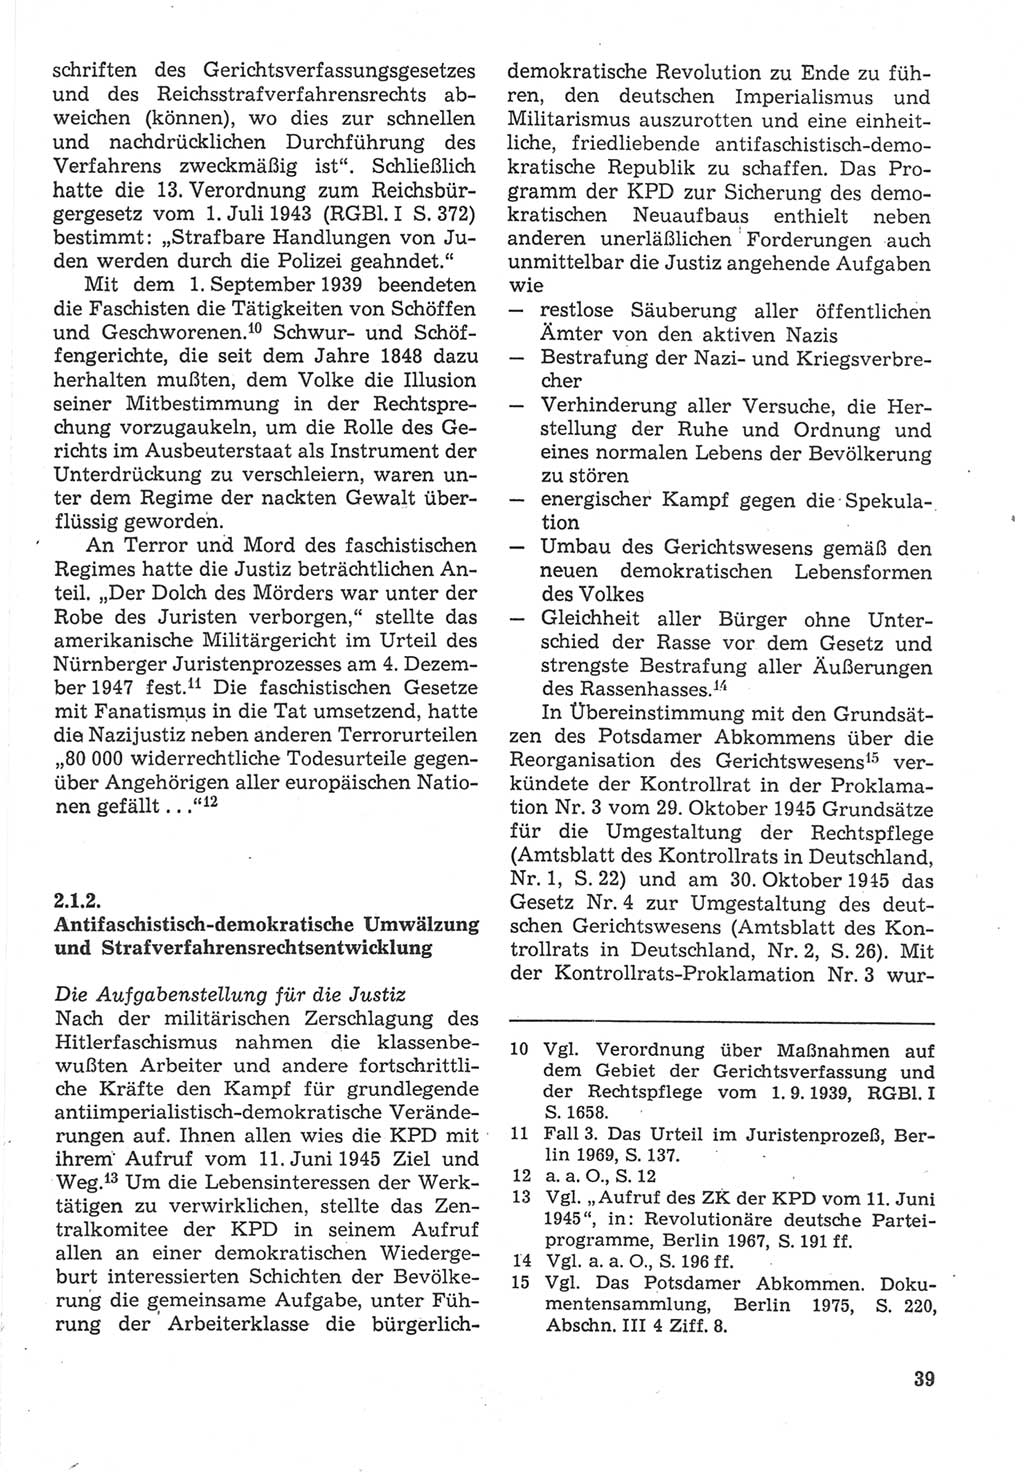 Strafverfahrensrecht [Deutsche Demokratische Republik (DDR)], Lehrbuch 1987, Seite 39 (Strafverf.-R. DDR Lb. 1987, S. 39)